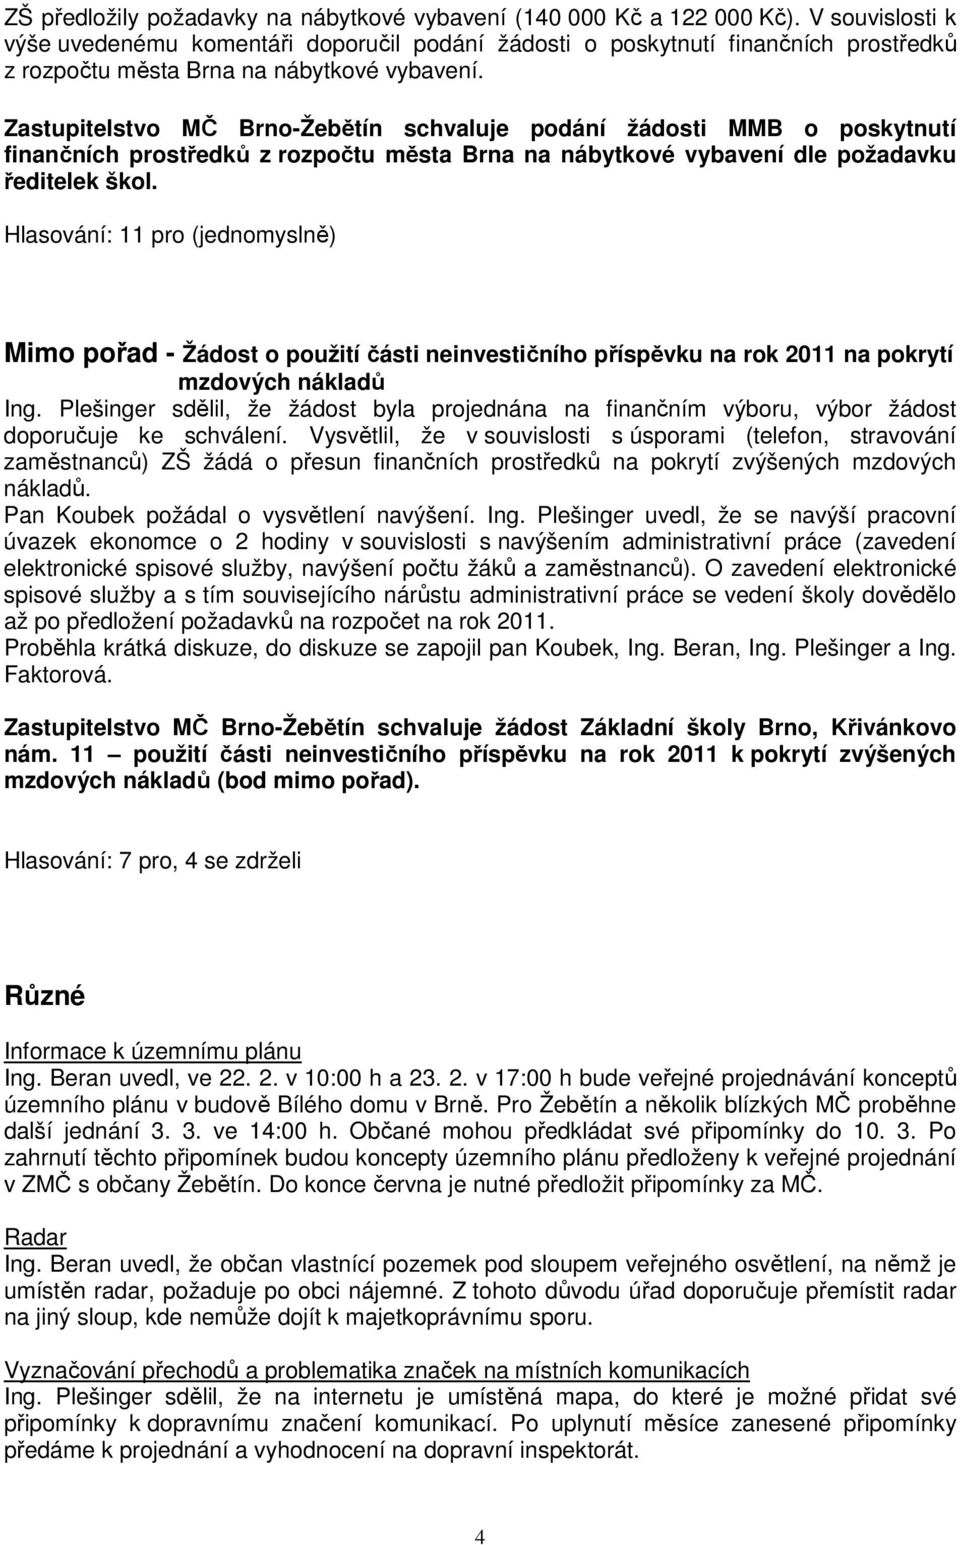 Zastupitelstvo MČ Brno-Žebětín schvaluje podání žádosti MMB o poskytnutí finančních prostředků z rozpočtu města Brna na nábytkové vybavení dle požadavku ředitelek škol.